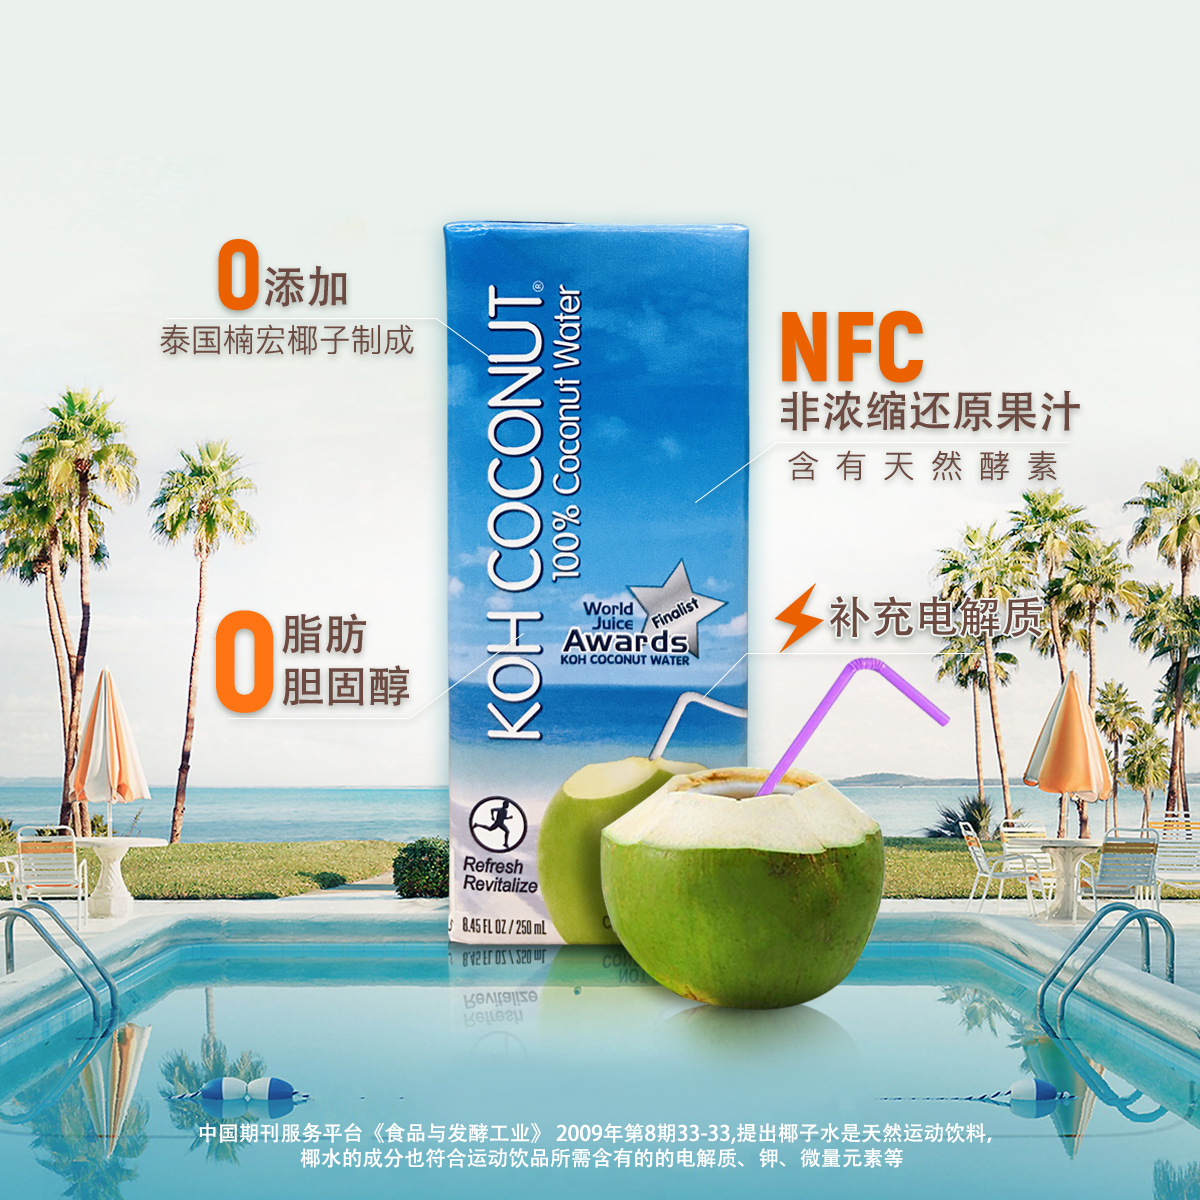 【保质期至7月2日】KOH酷椰屿100%椰子水泰国进口NFC果汁饮料48盒 - 图1